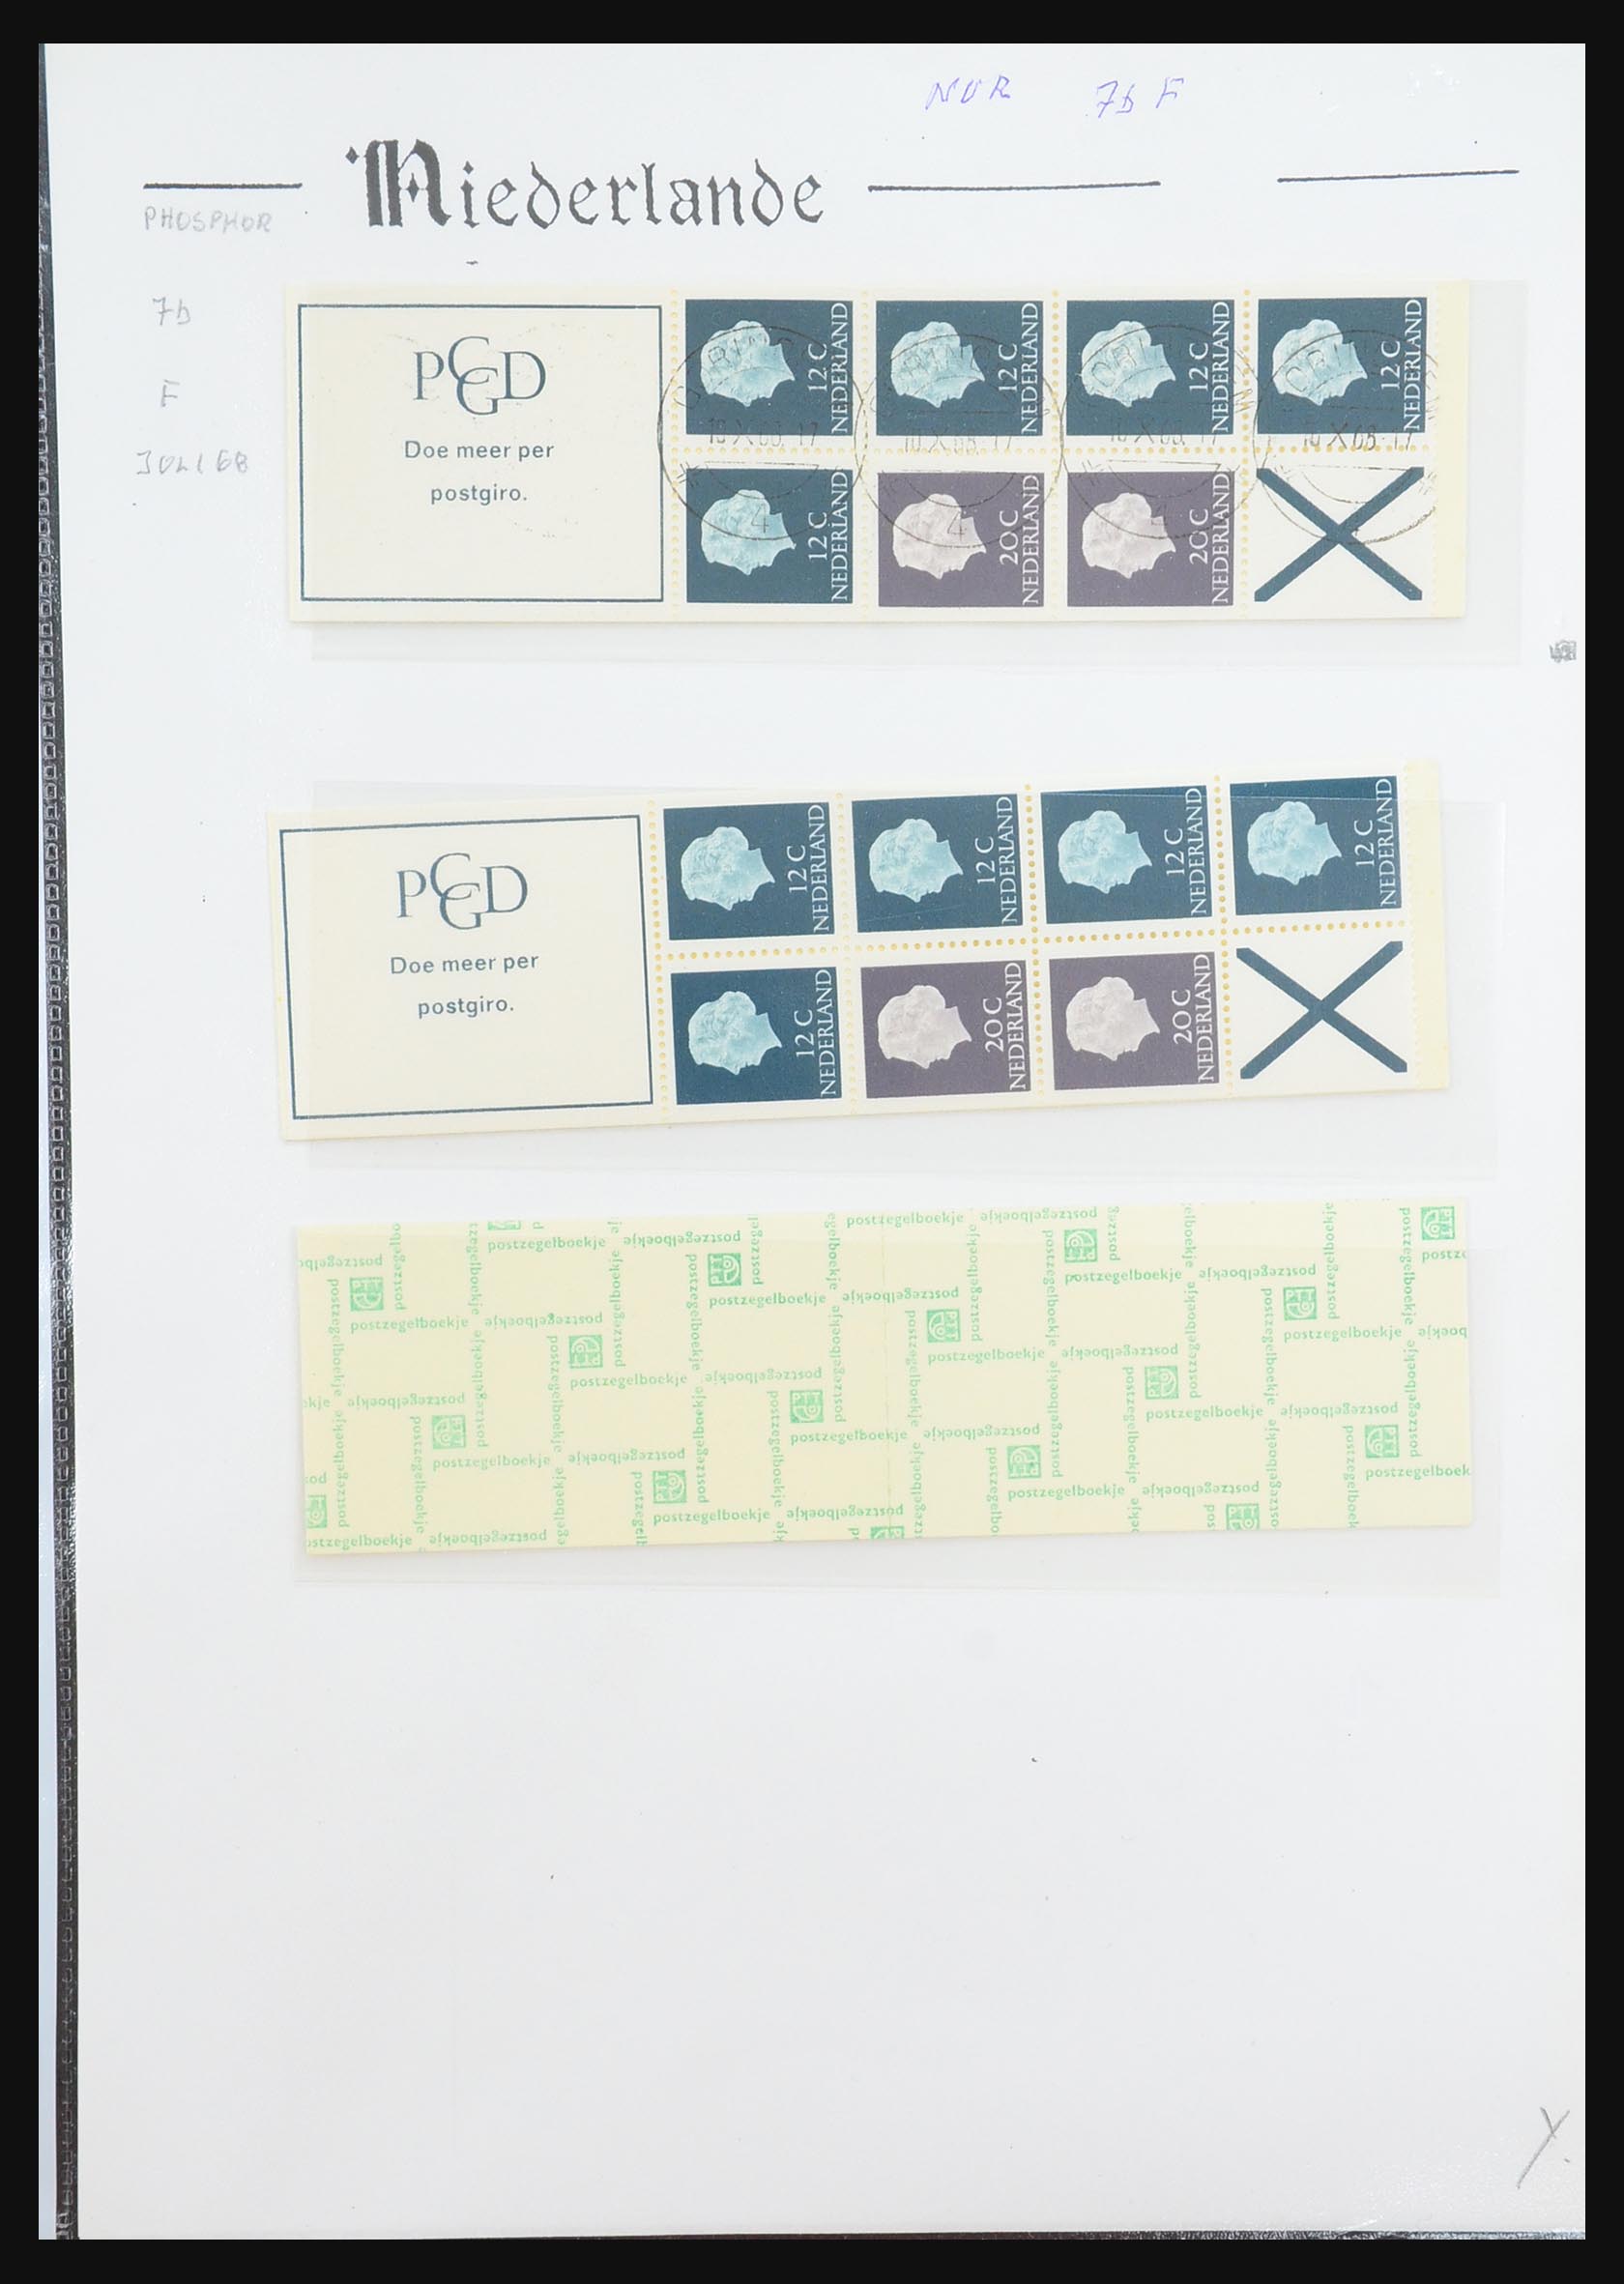 31311 025 - 31311 Netherlands stamp booklets 1964-1994.